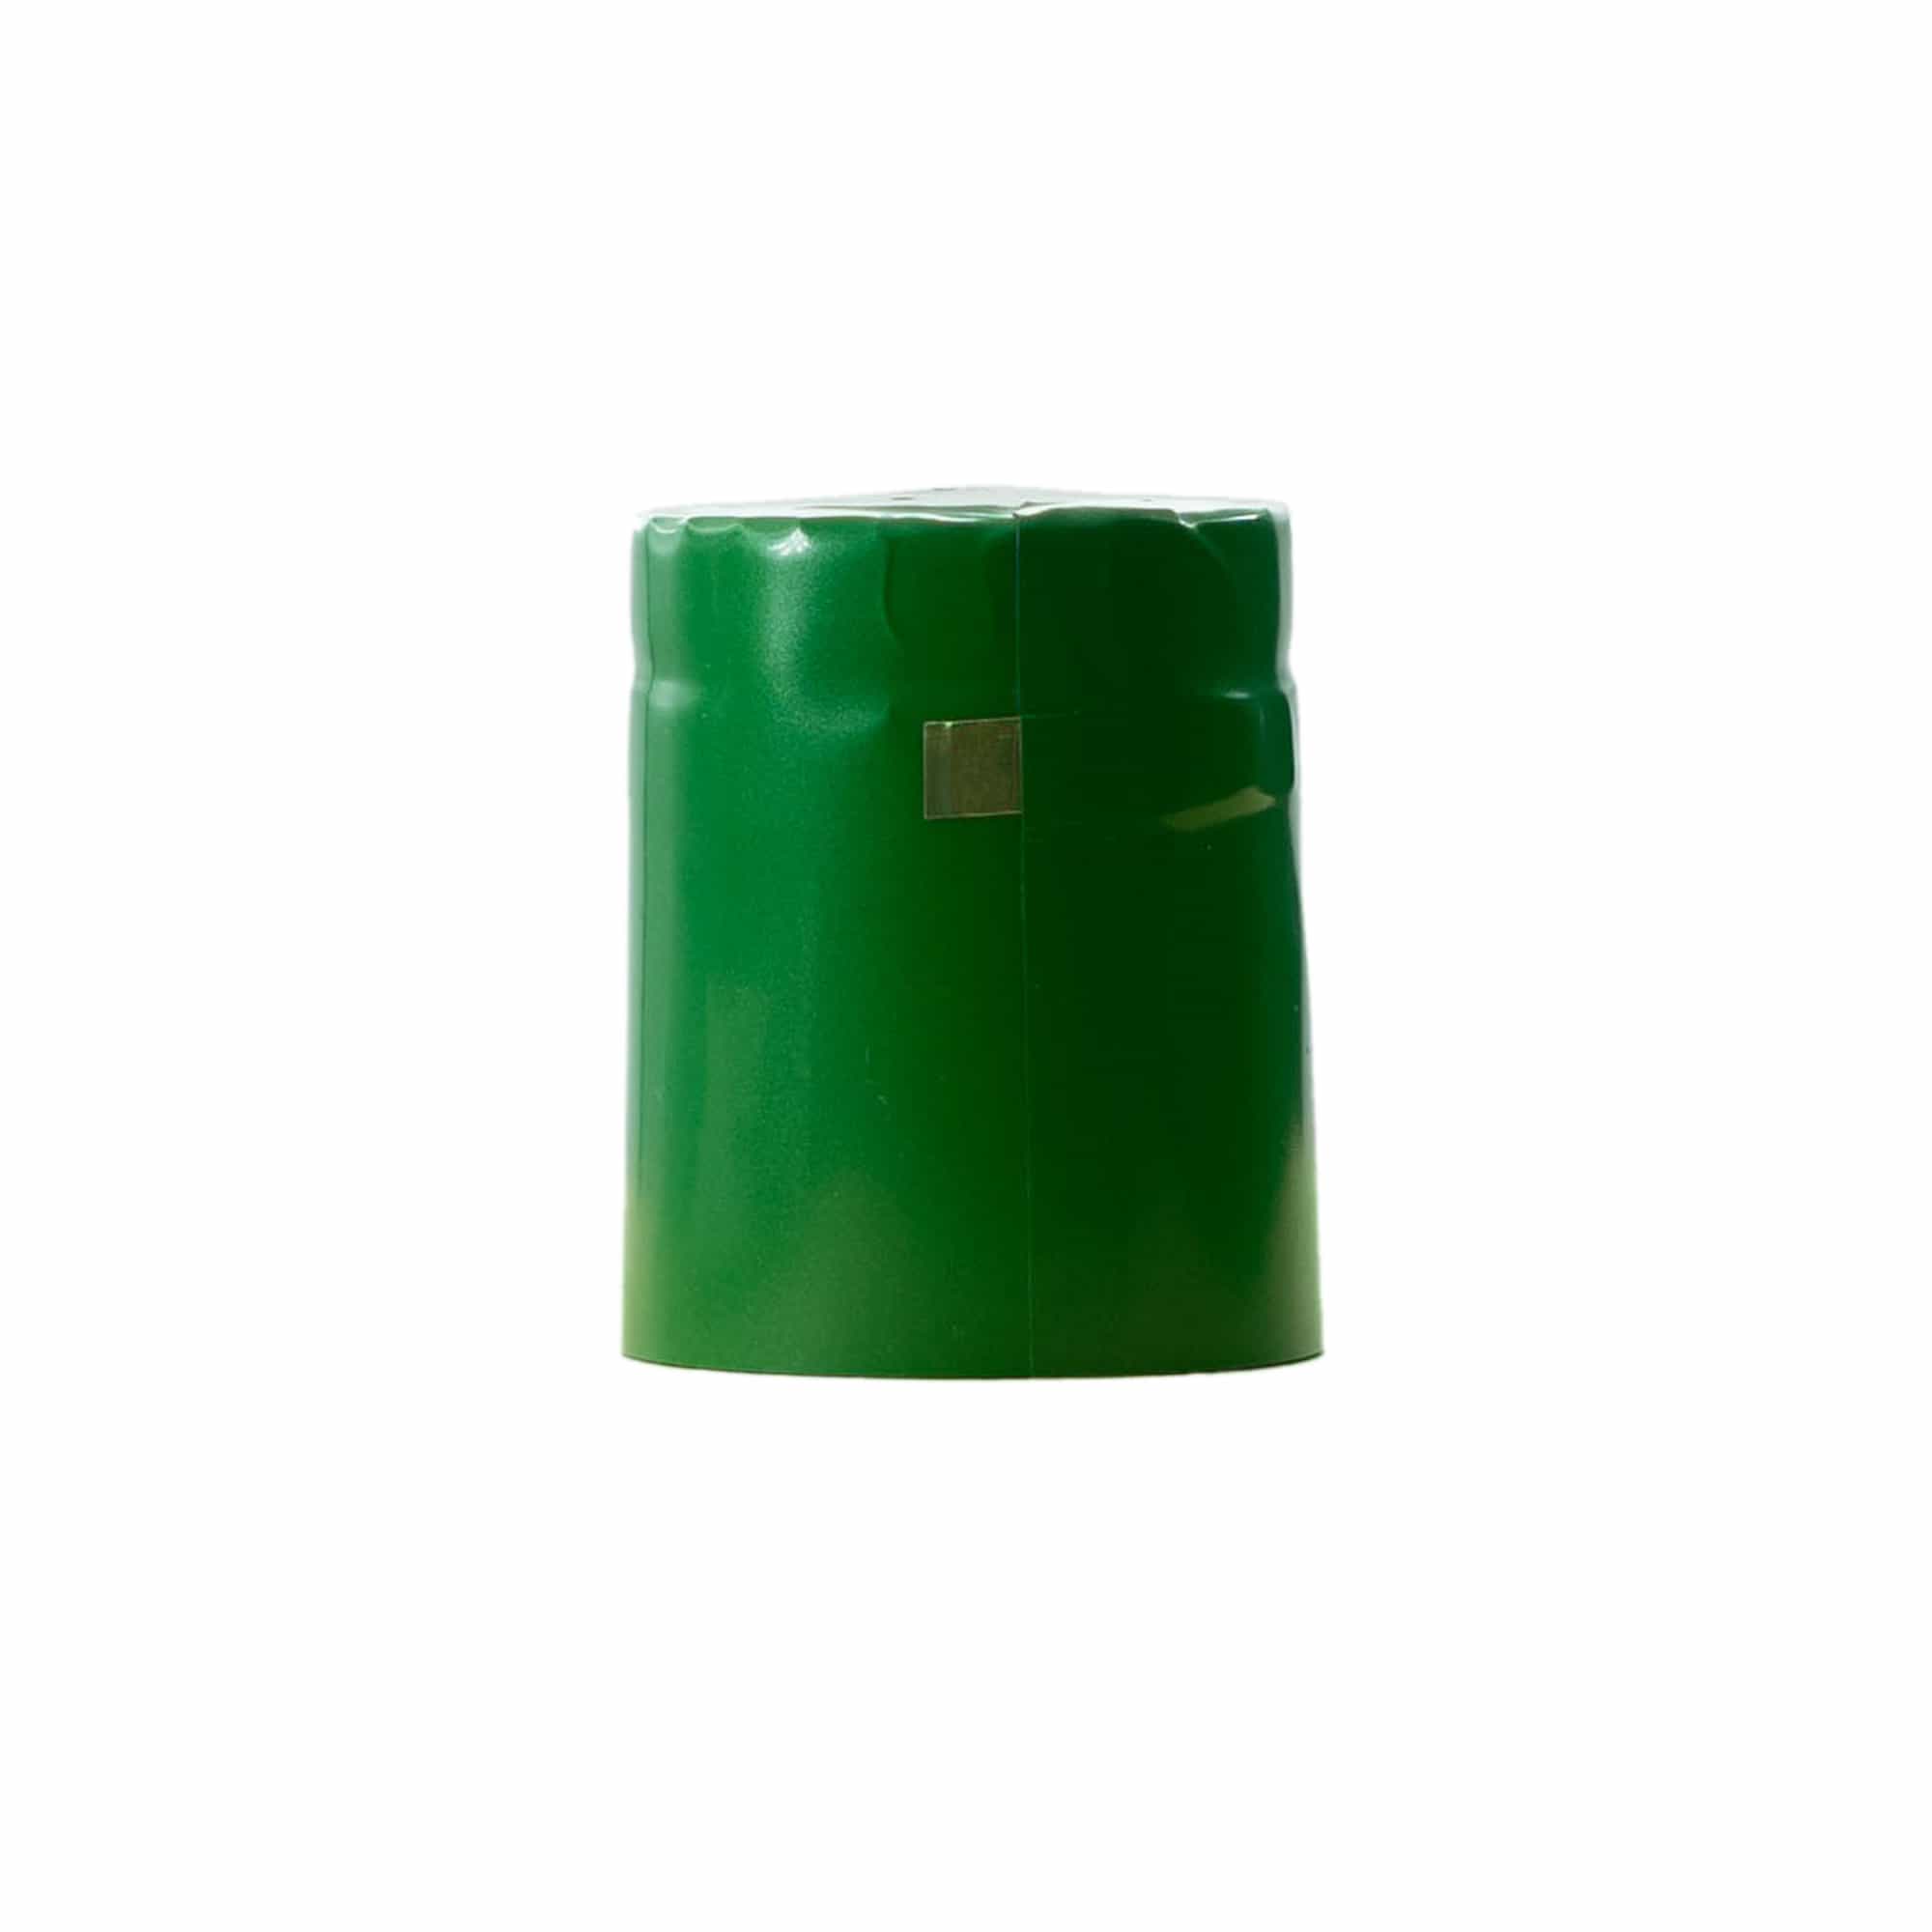 Capsule thermo-rétractable 32x41, plastique PVC, vert